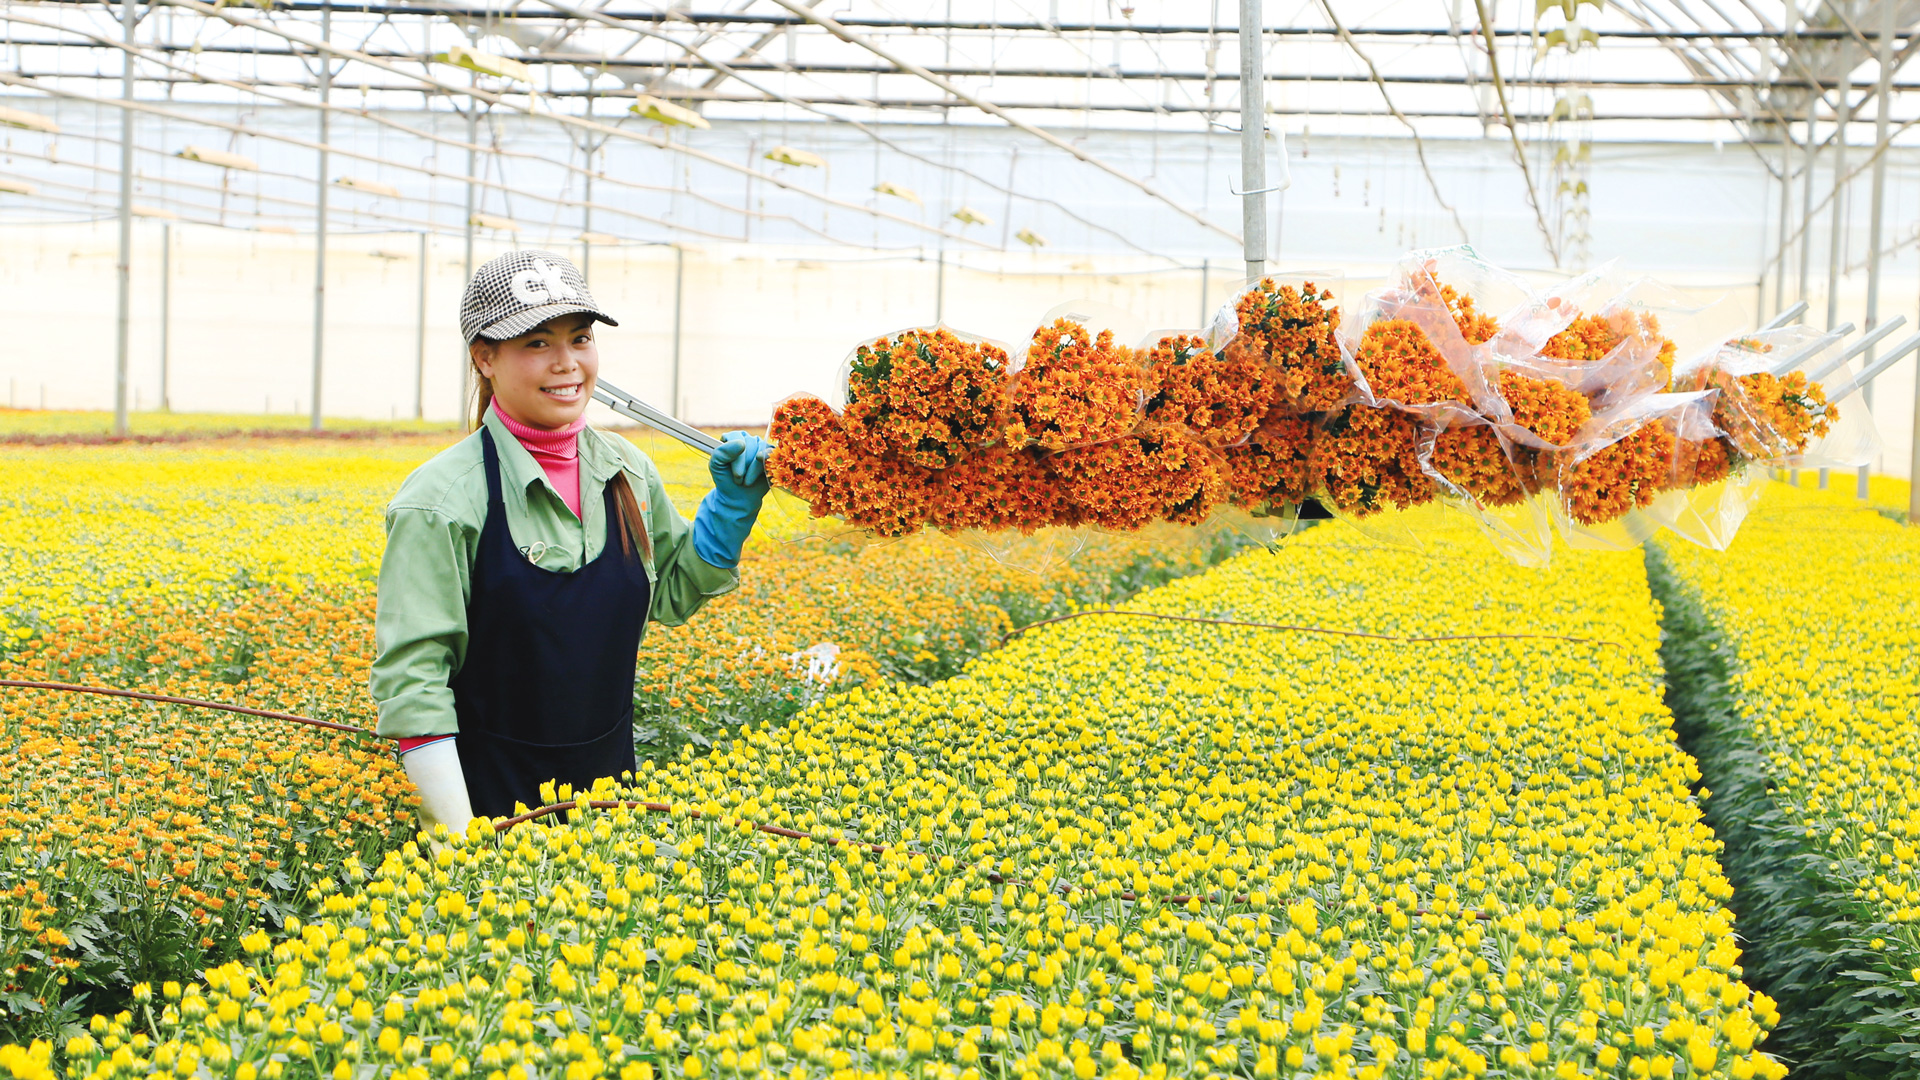 Nông nghiệp công nghệ cao là thế mạnh đã trở thành thương hiệu của Lâm Đồng